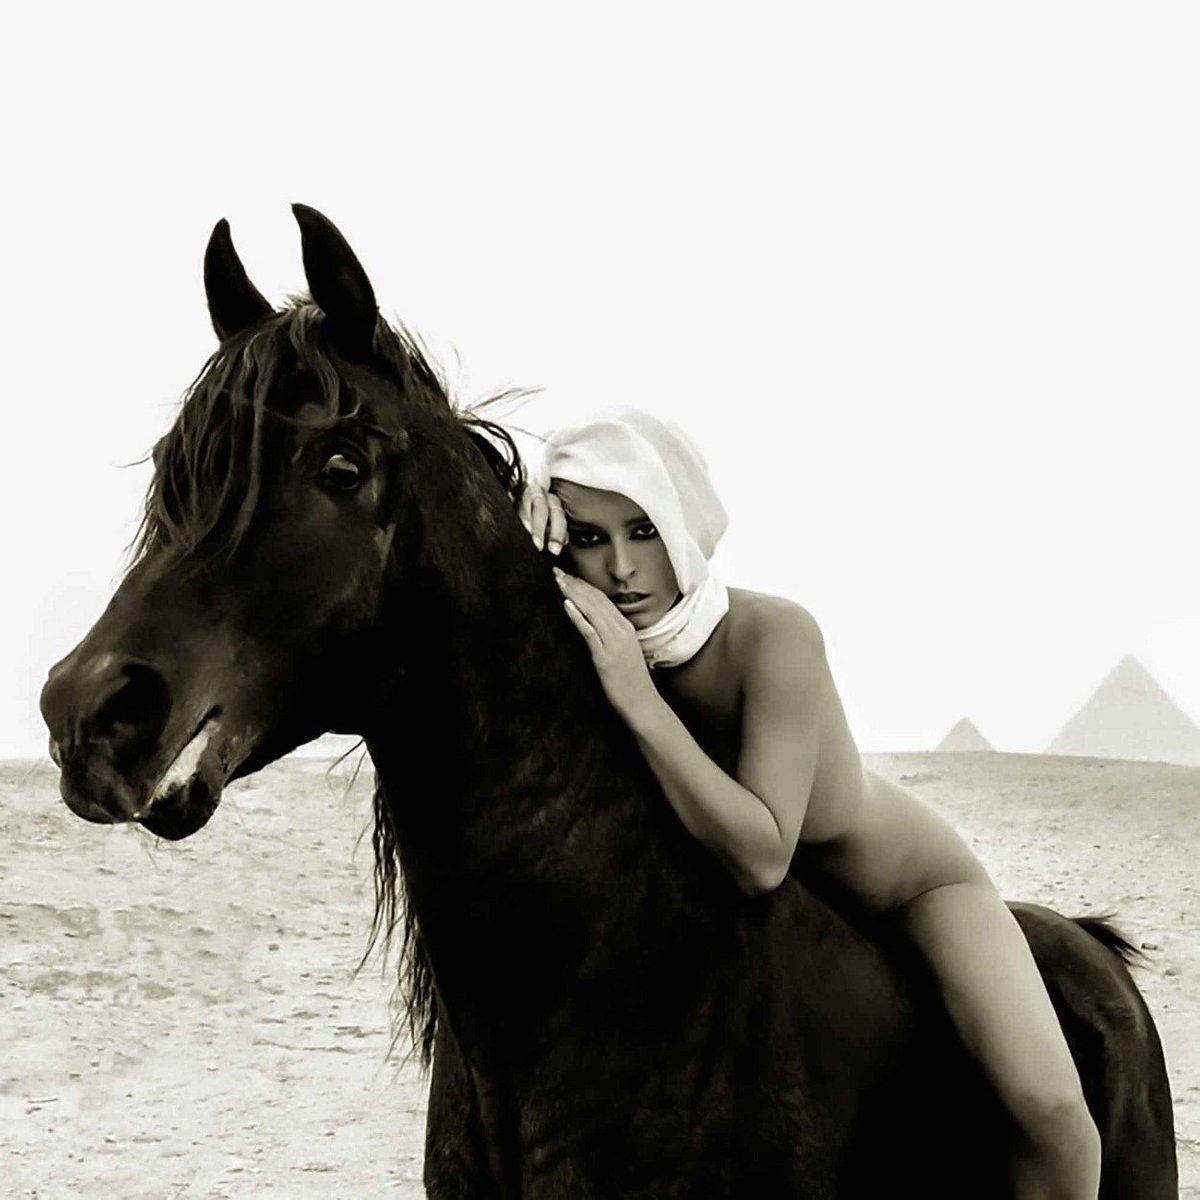 Belgická modelka Marisa Papen skončila v kriminále, za nahé fotky u egyptských památek. 